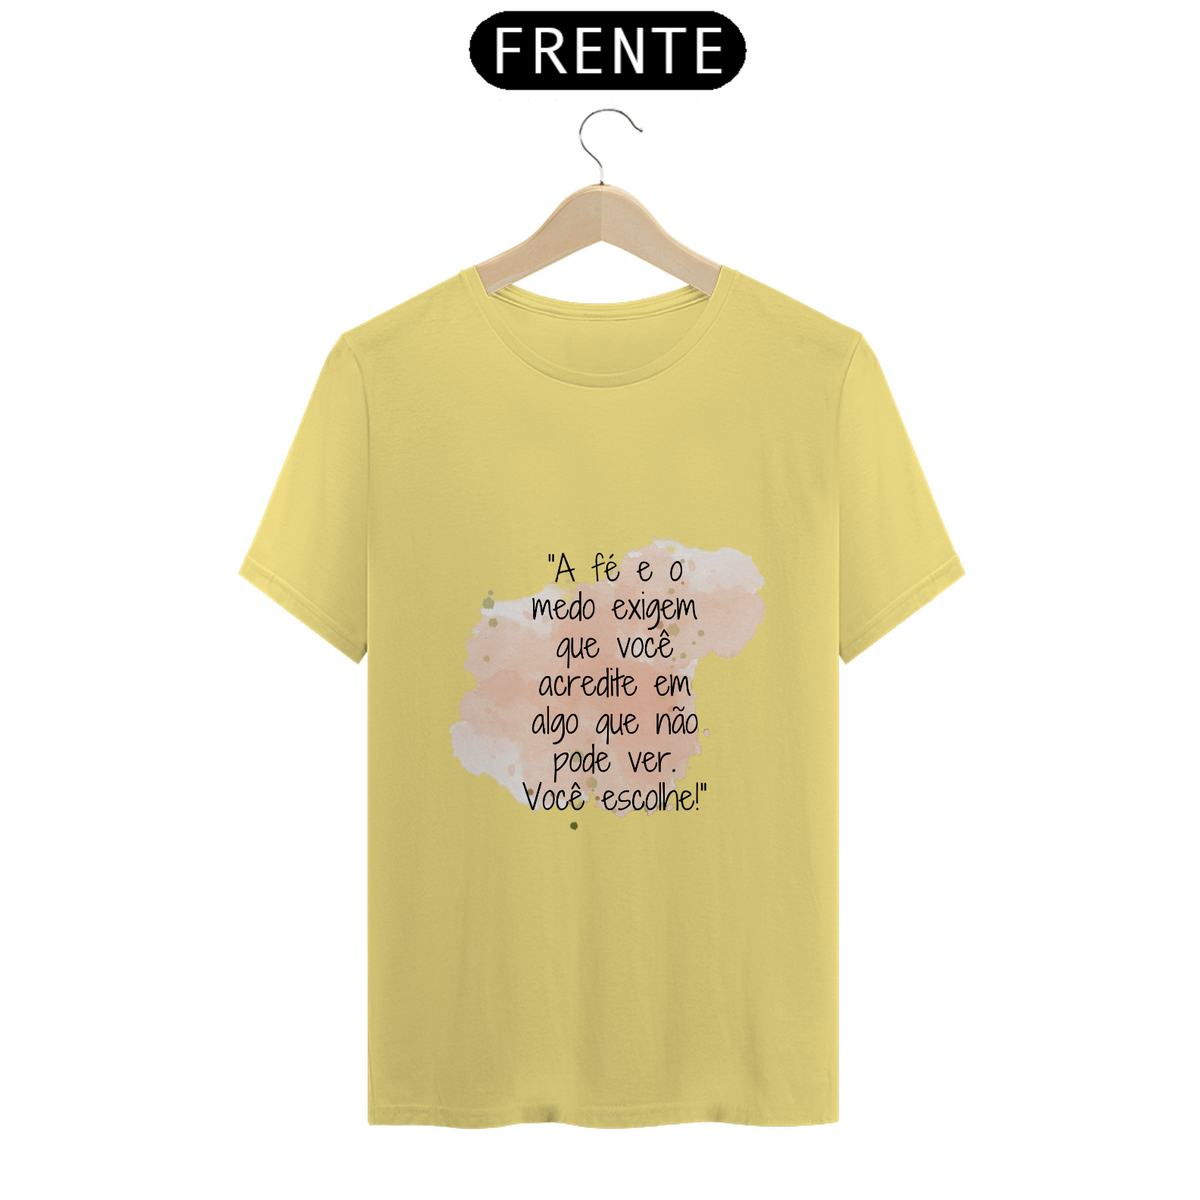 Nome do produto: T-Shirt Estonada “A fé e o medo exigem que você acredite em algo que não pode ver. Você escolhe!”